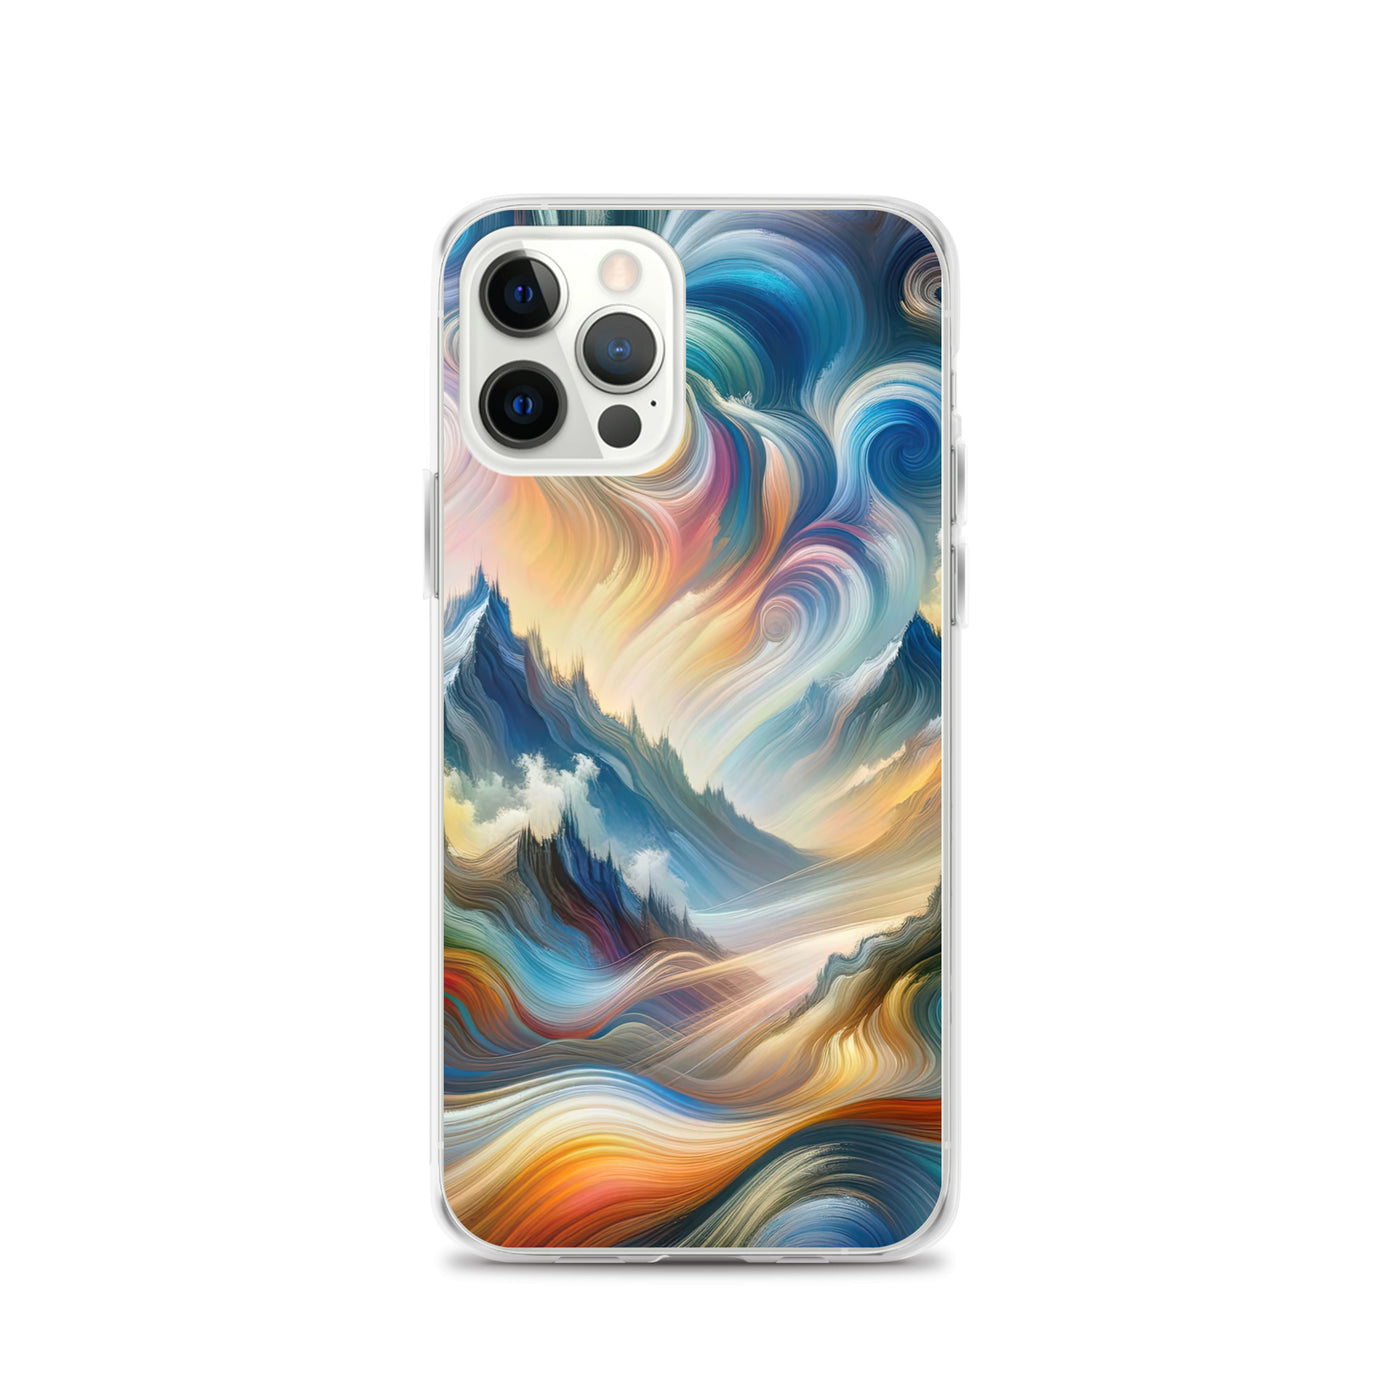 Ätherische schöne Alpen in lebendigen Farbwirbeln - Abstrakte Berge - iPhone Schutzhülle (durchsichtig) berge xxx yyy zzz iPhone 12 Pro